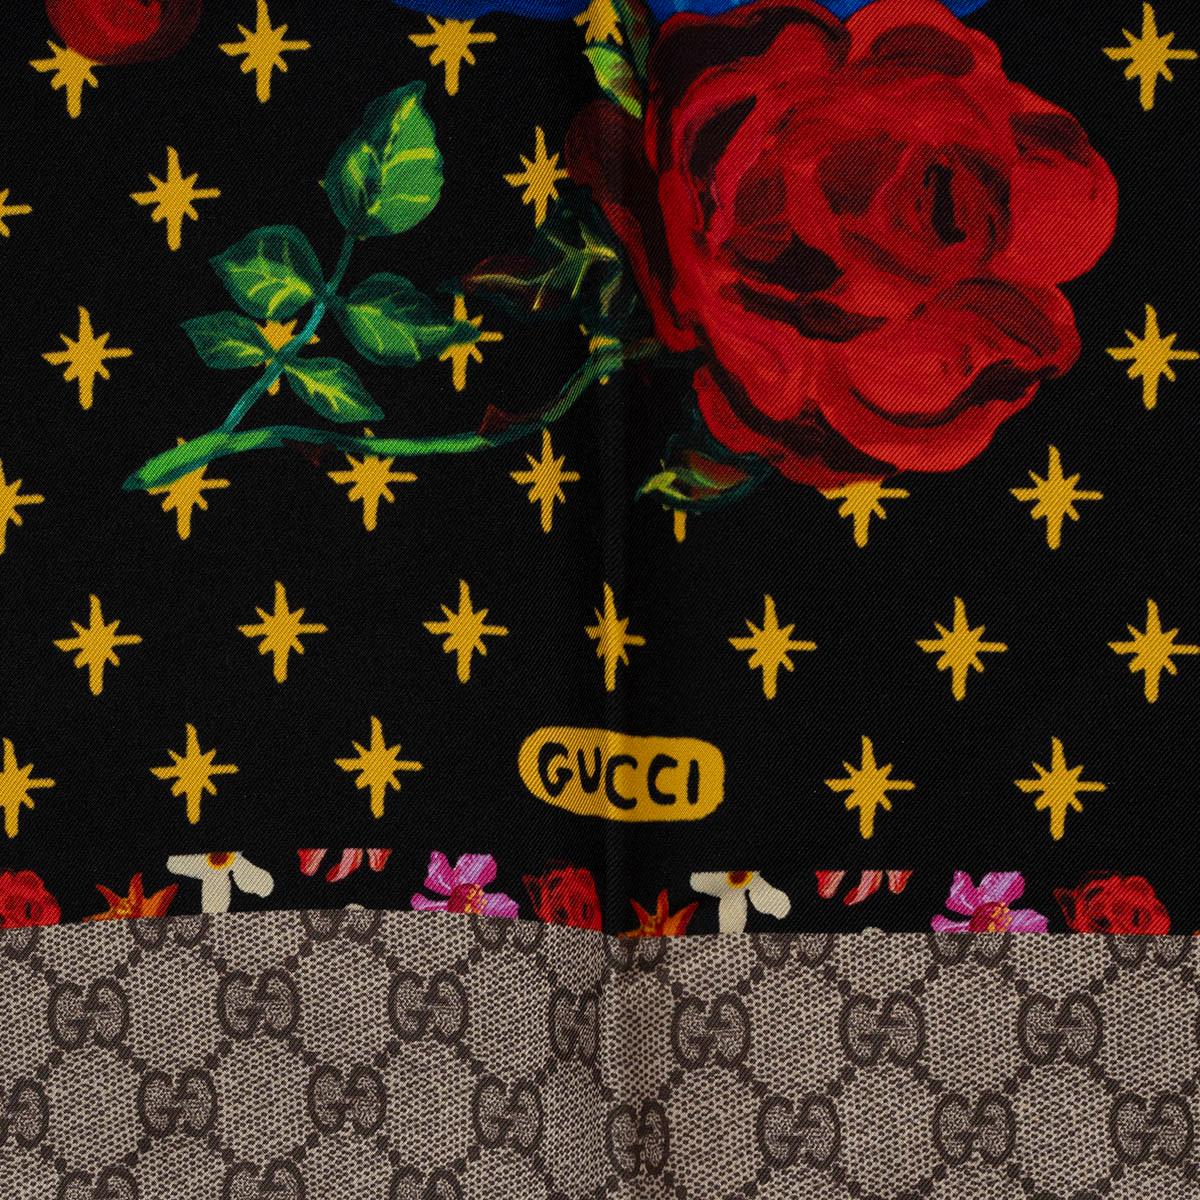 100% authentischer Gucci-Schal aus schwarzer Seide (100%) mit mehrfarbigem Spaniel-Hunde- und Vasen-Print und taupefarbener GG-Bordüre. Wurde getragen und ist in ausgezeichnetem Zustand. 

Messungen
Breite	90cm (35.1in)
Länge	90cm (35.1in)

Alle